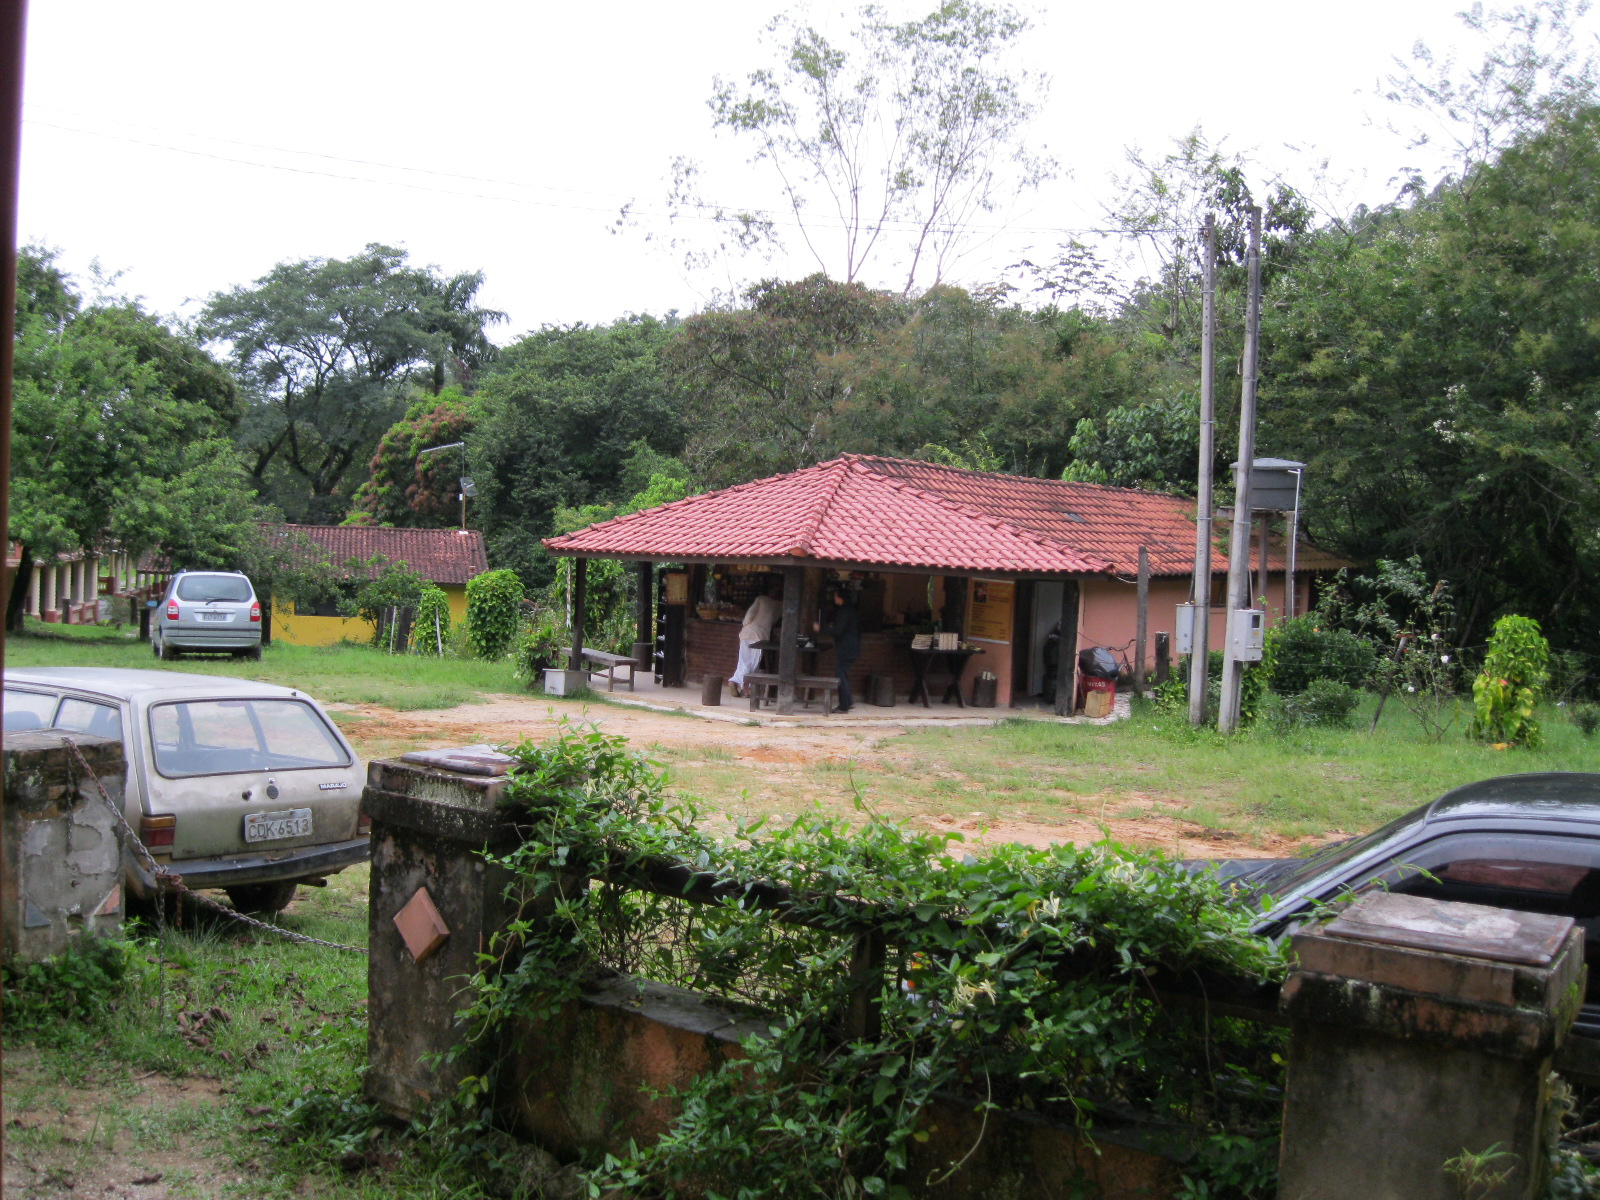 Nova Gokula: Uma visita à Índia sem sair do Brasil